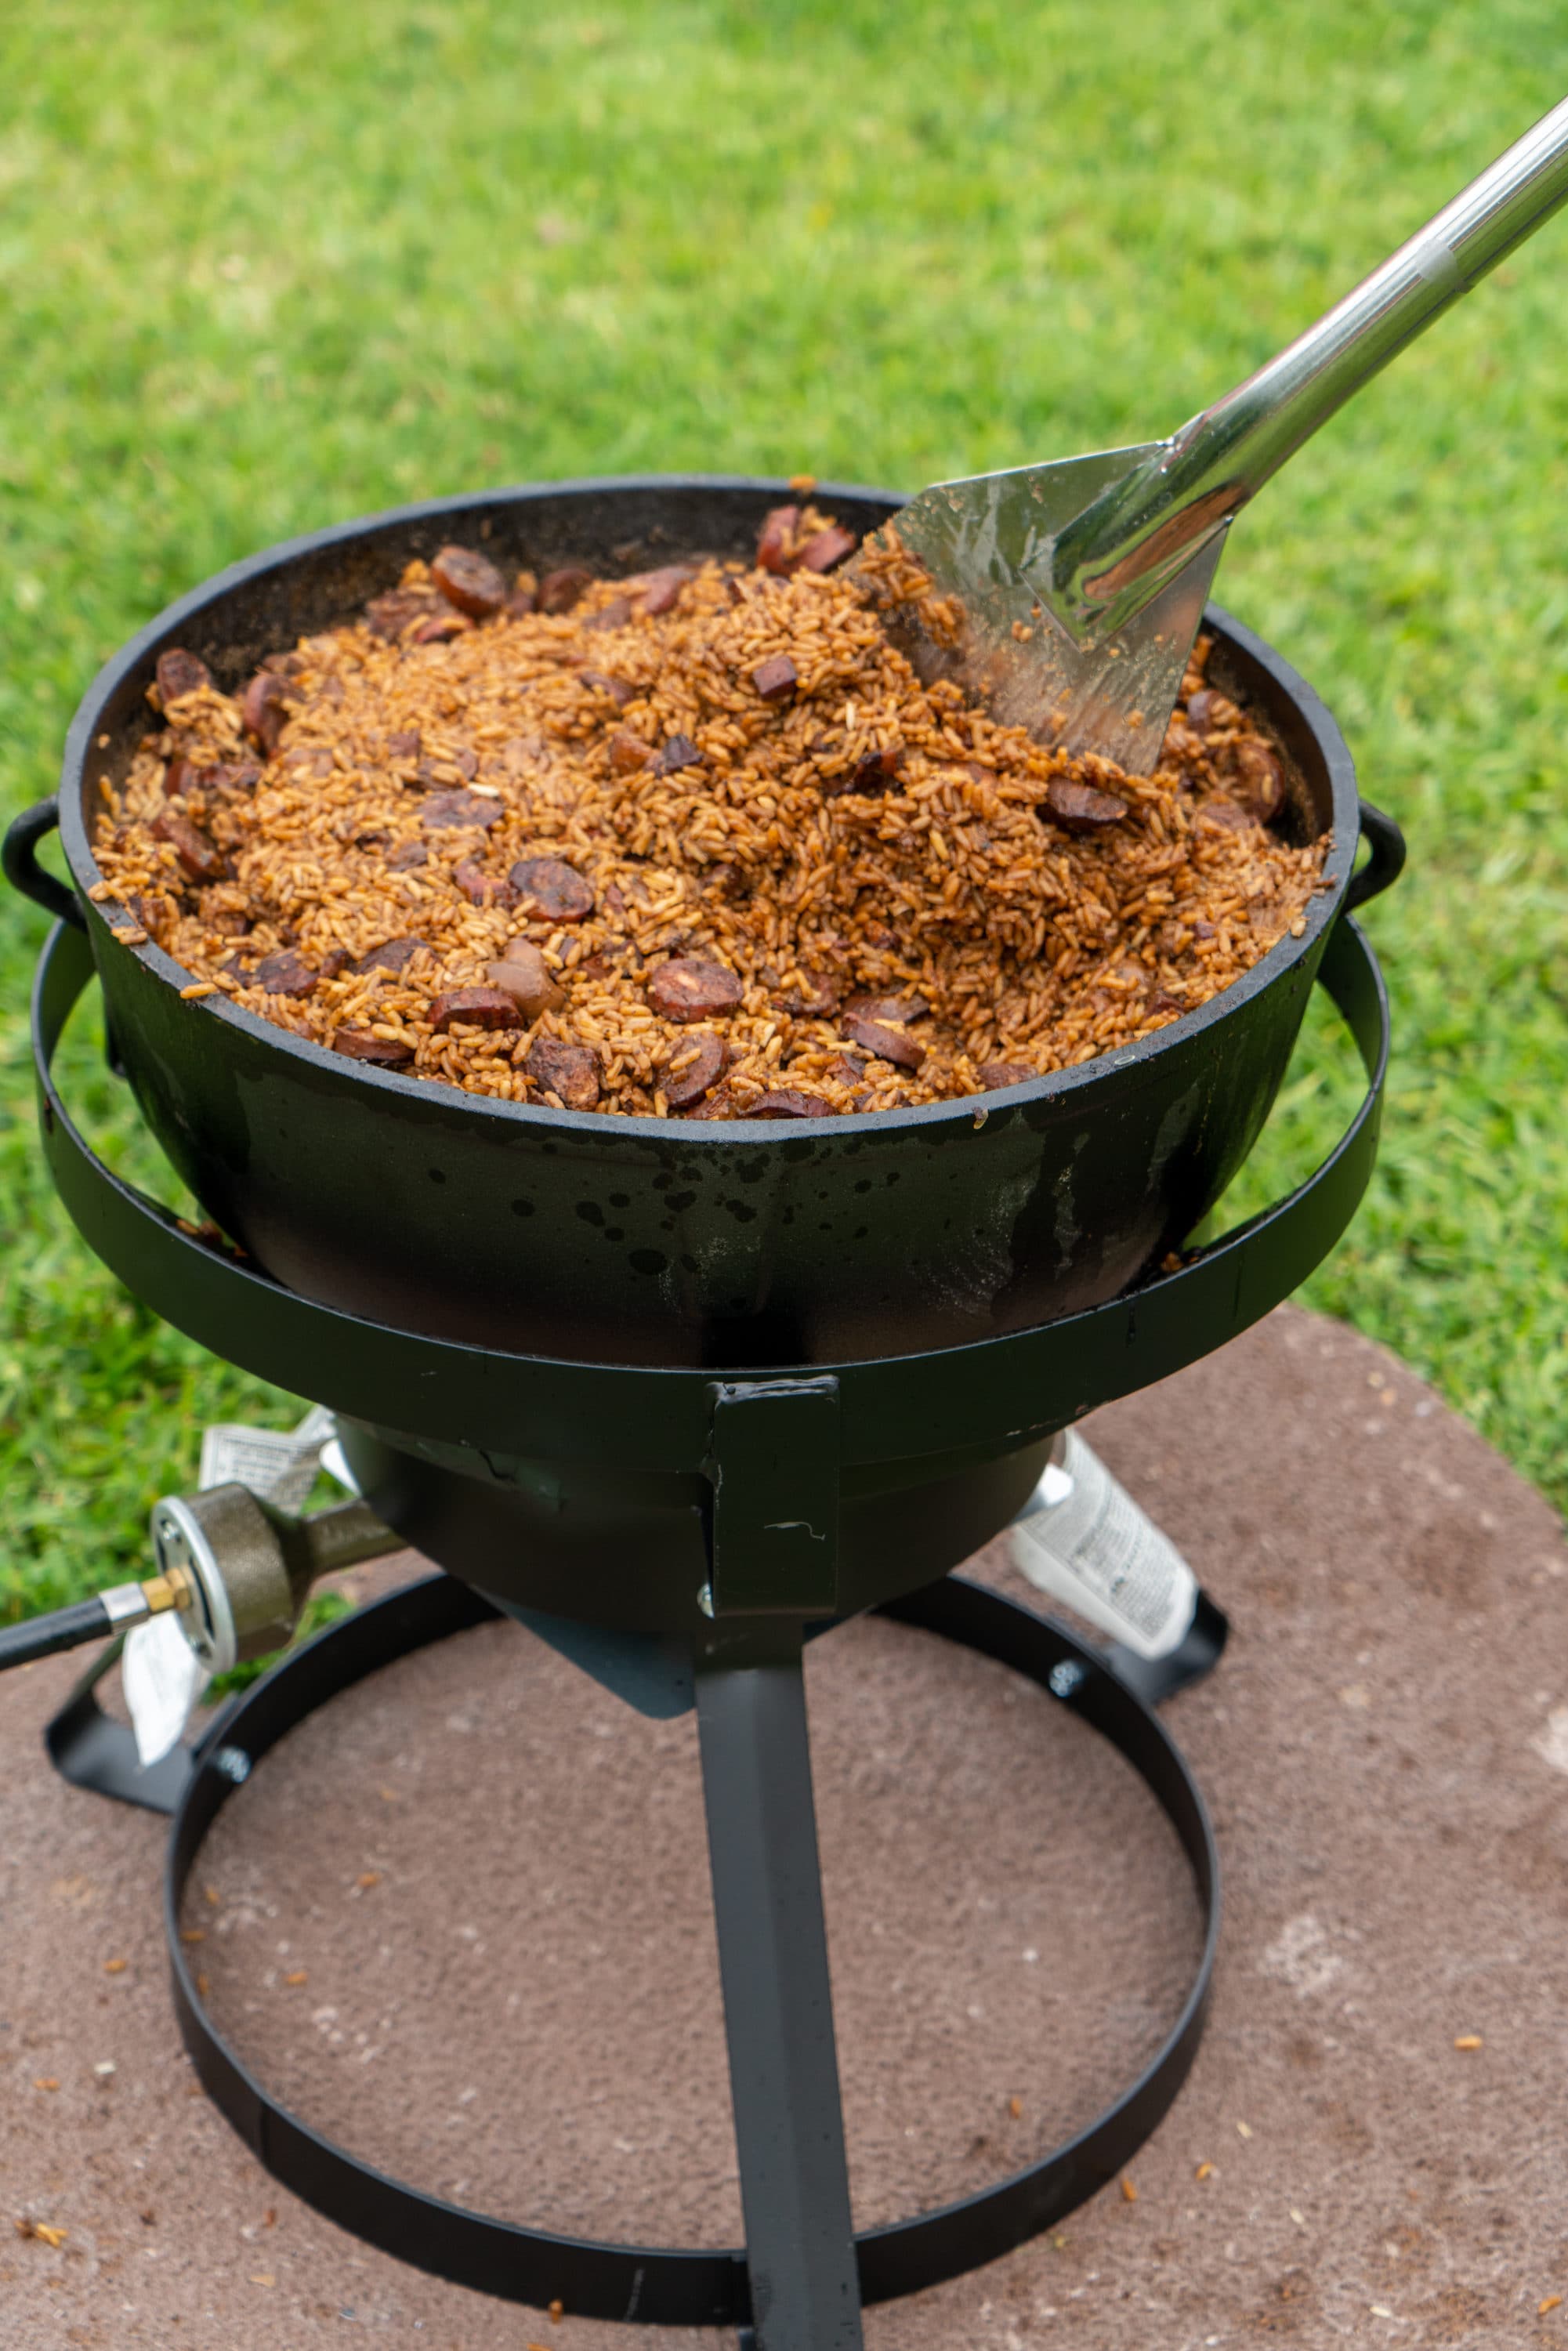 King Kooker 10-Gallon Jambalaya Cast Iron Pot and Outdoor Cooker